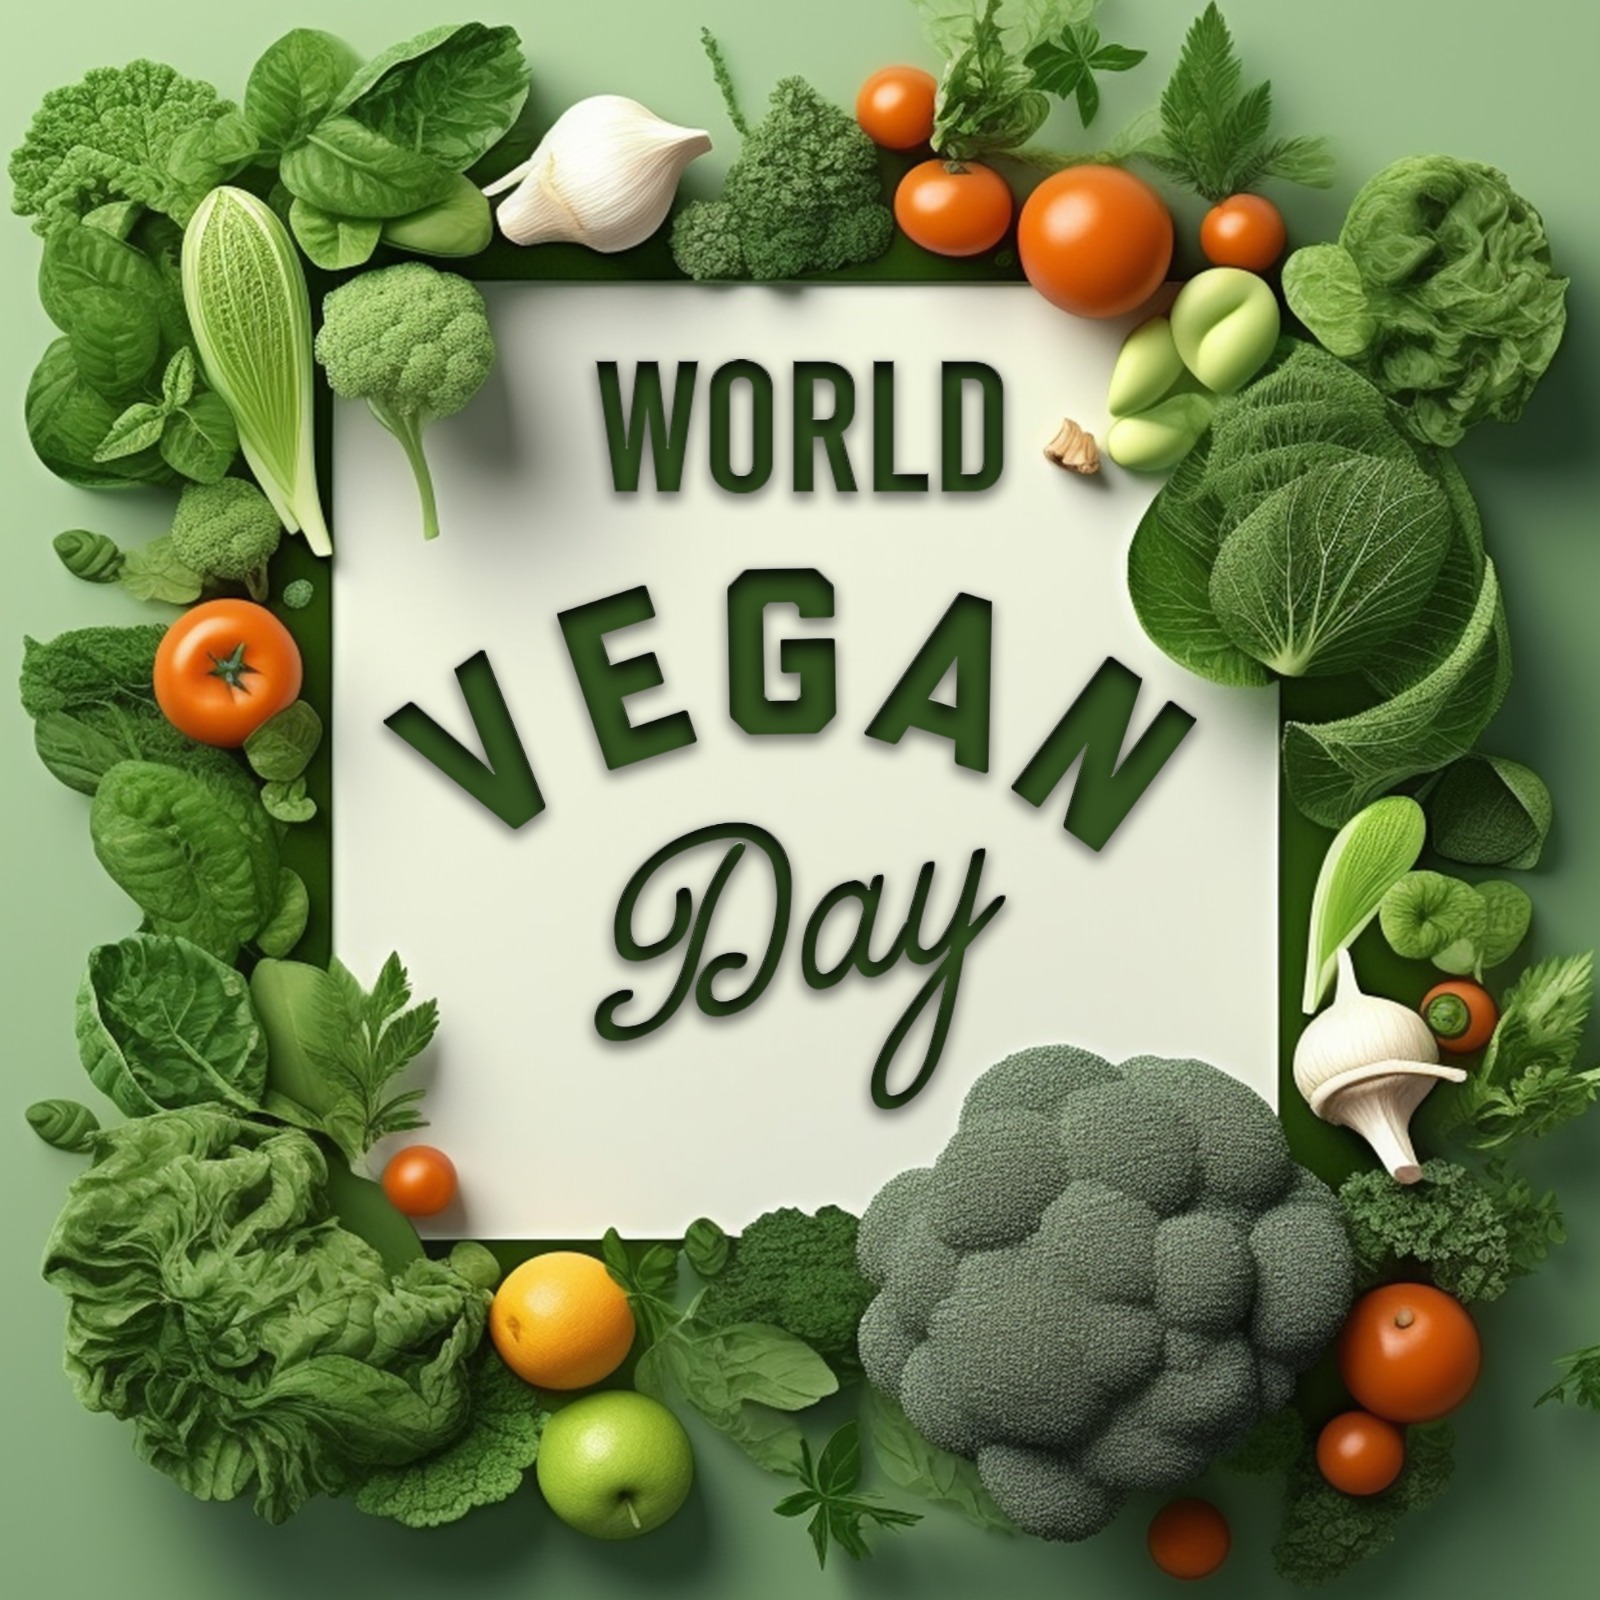 World Vegan Day : आयुर्वेद और शाकाहारी भोजन के लाभ